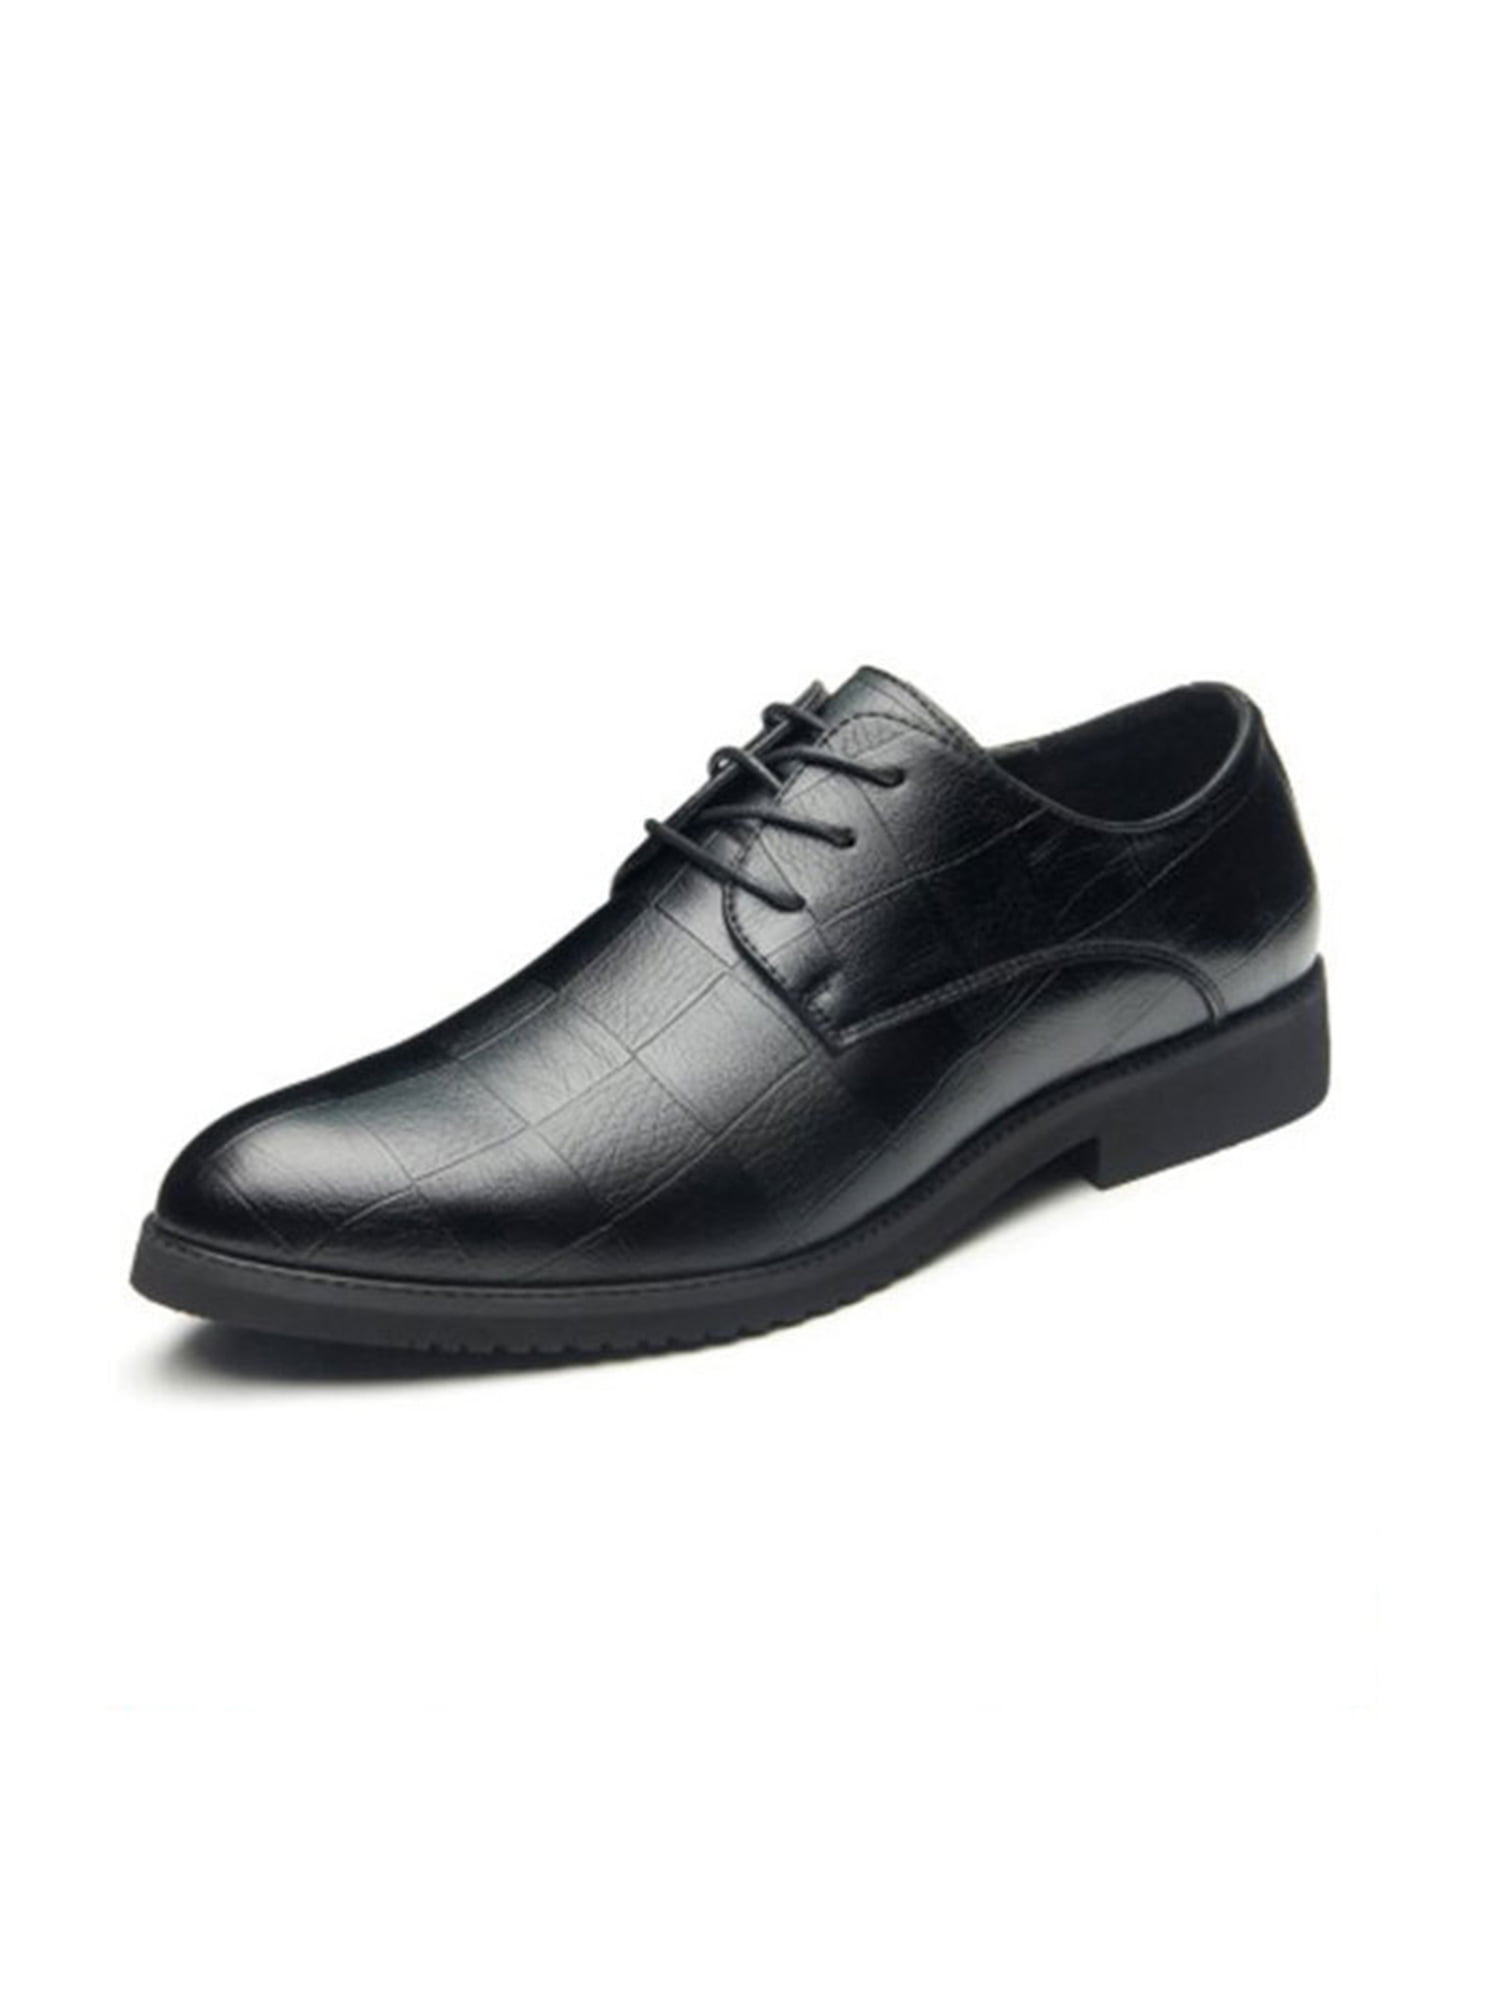  Men's Dress Shoes, Men's Wedding Shoes, Men's Pointed Toe  Front Lace Up Low Top Rubber Sole Office Dress Shoes (Color : Black, Size :  6)